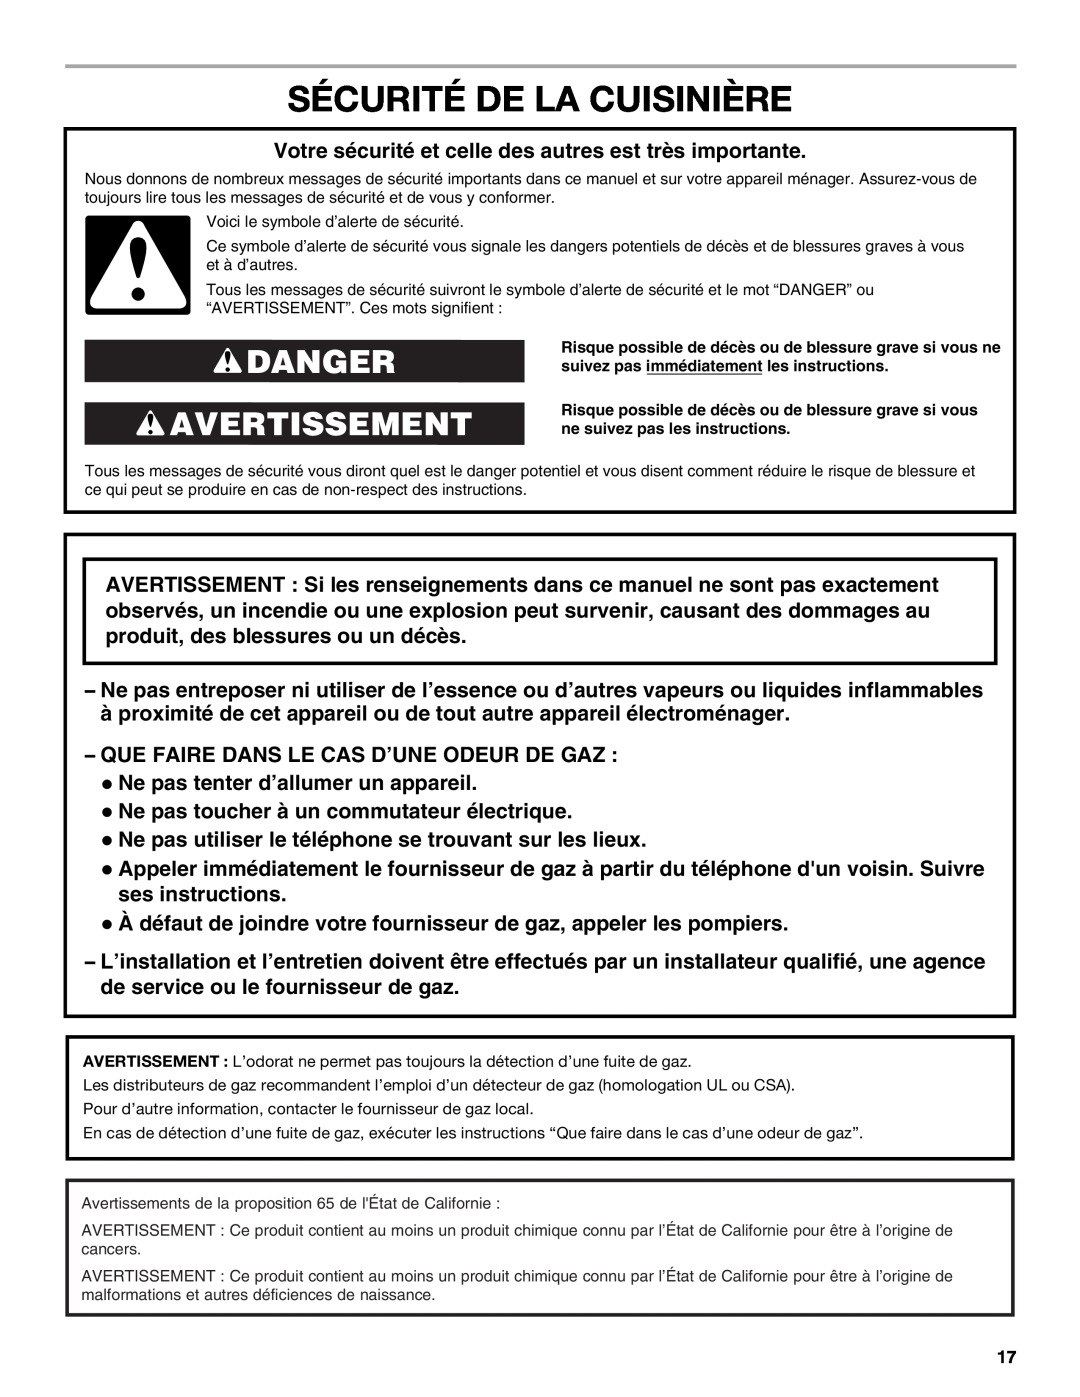 Whirlpool WFG231LVS manual Sécurité De La Cuisinière, Danger Avertissement 